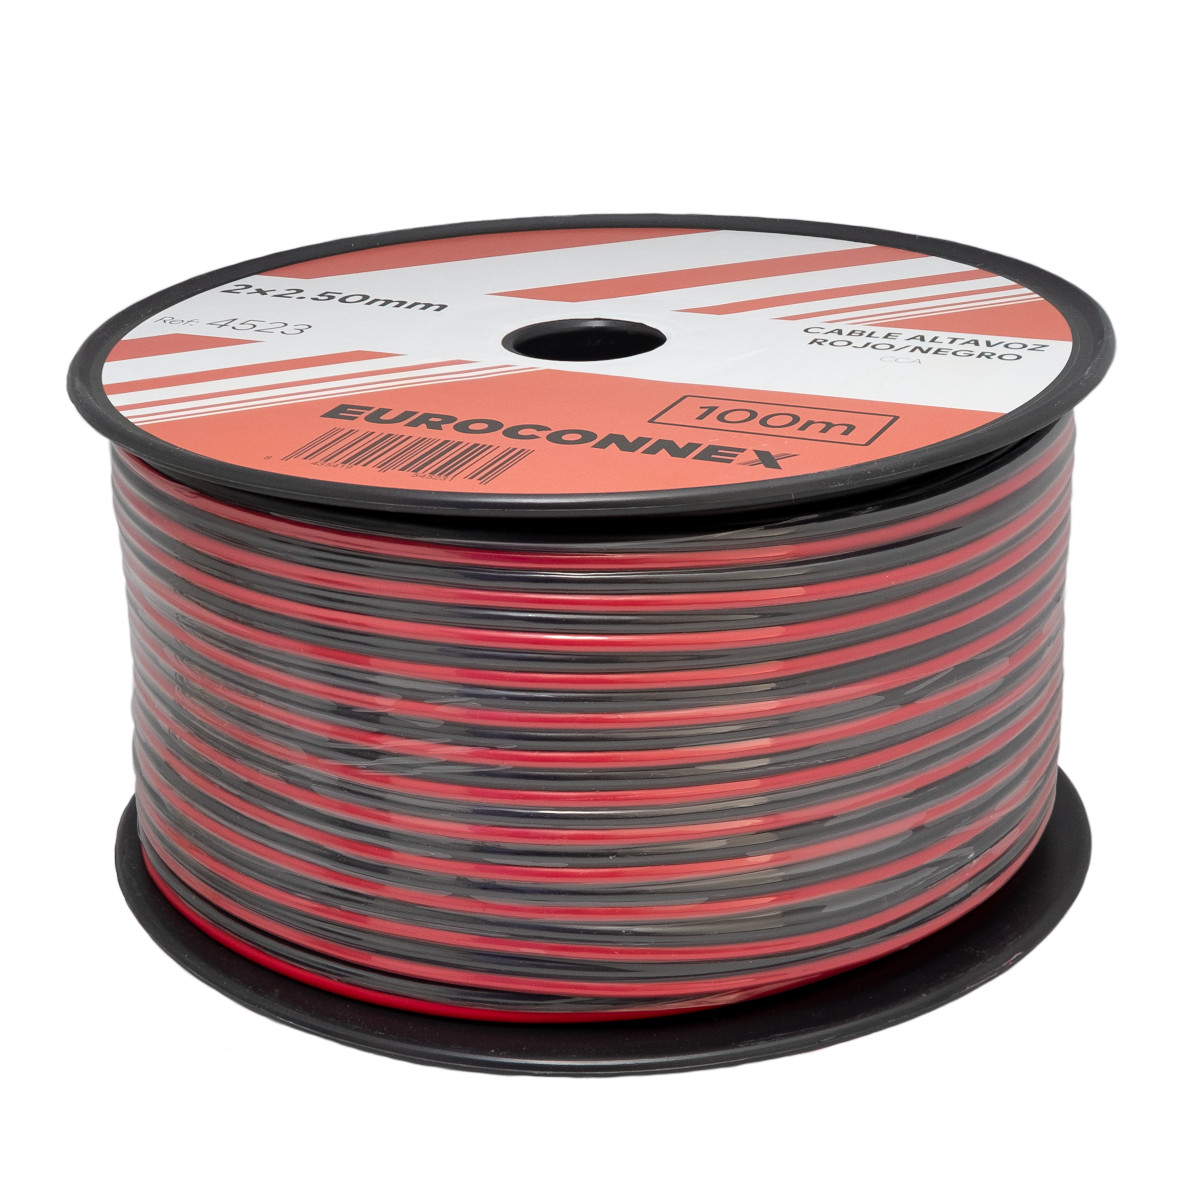 Cable de Altavoz Paralelo Bicolor Rojo/Negro 2x2.50mm² CCA, Rollo de 100m